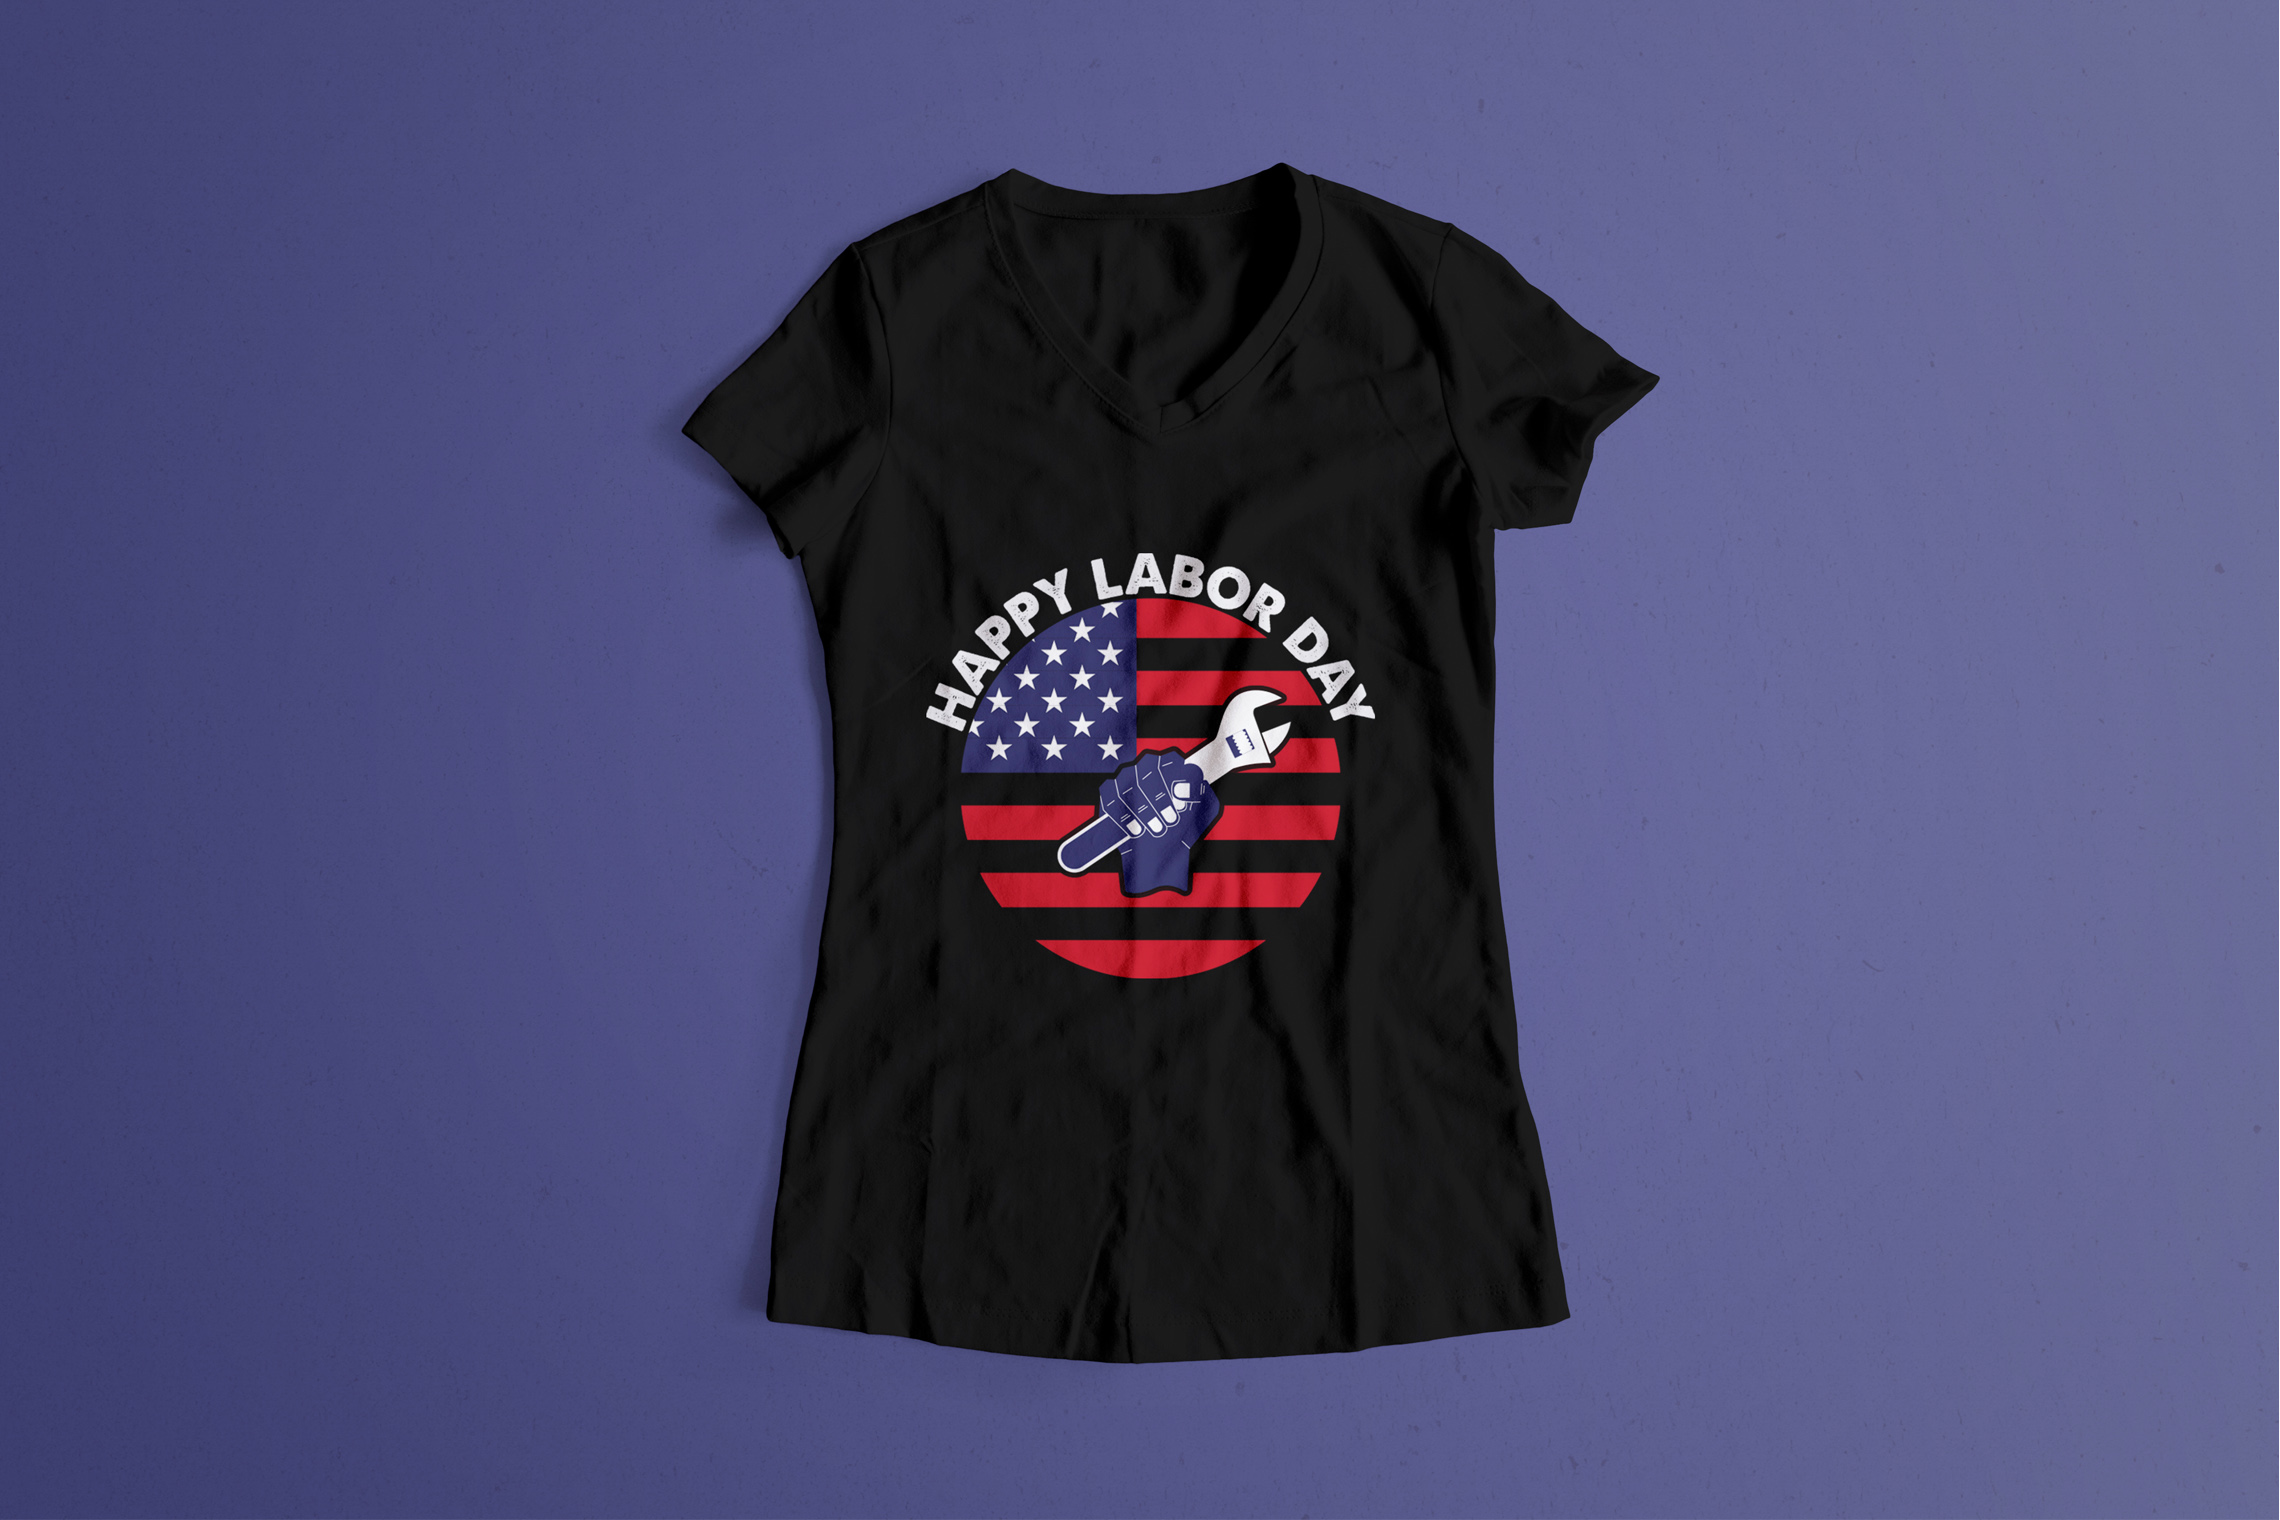 Black t-shirt with USA flag.